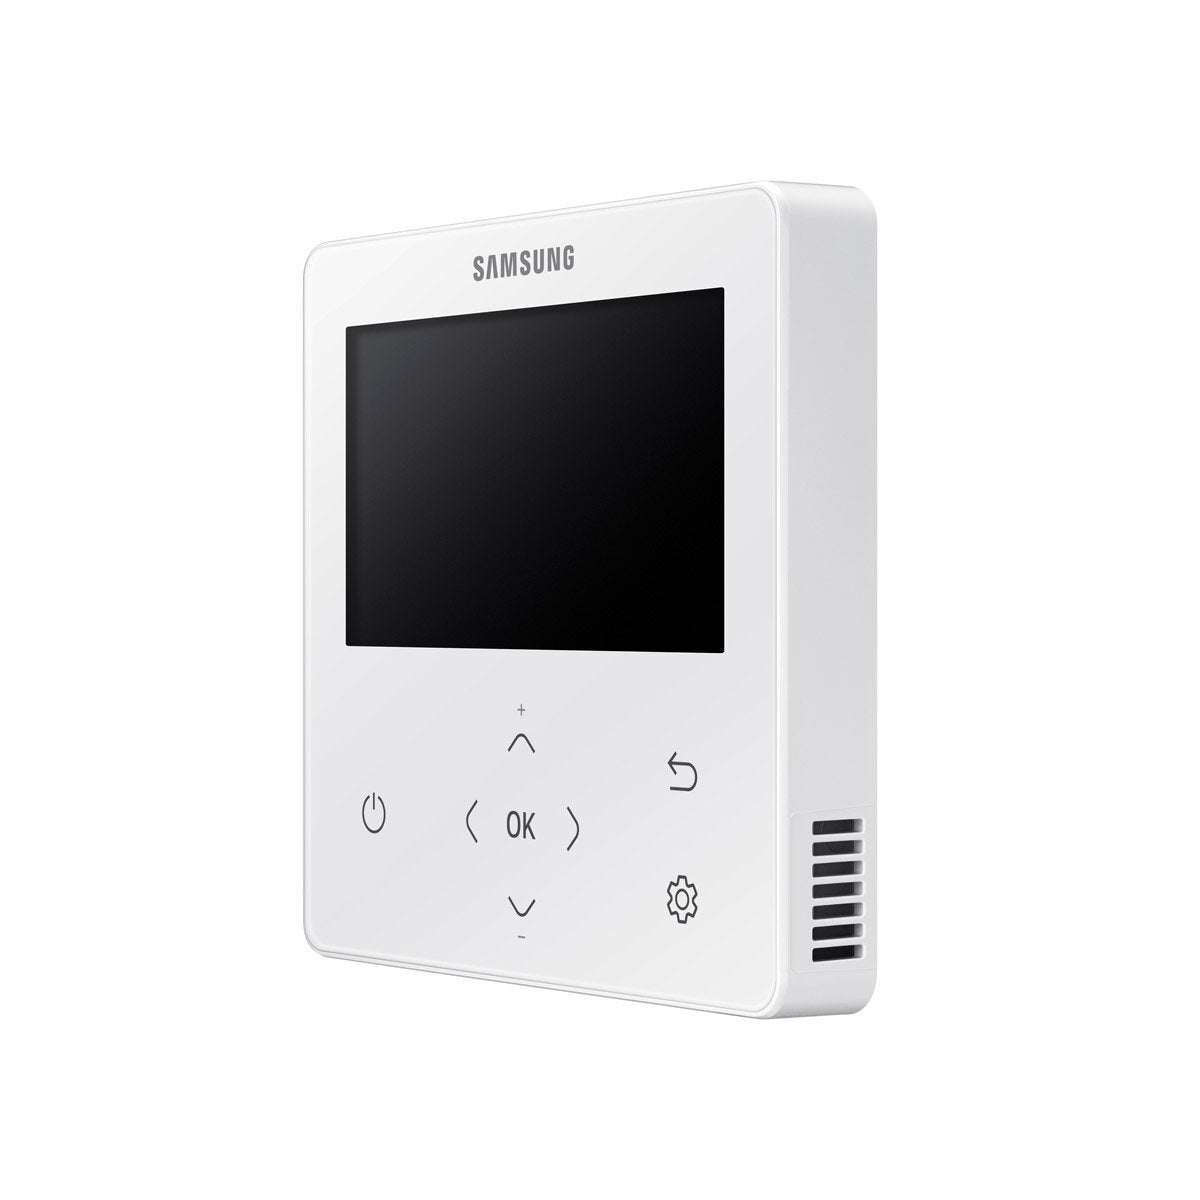 Samsung Klimaanlage Cassette WindFree 1 Way Split Panels 9000 + 9000 + 12000 + 12000 BTU Inverter A++ Außengerät 8,0 kW